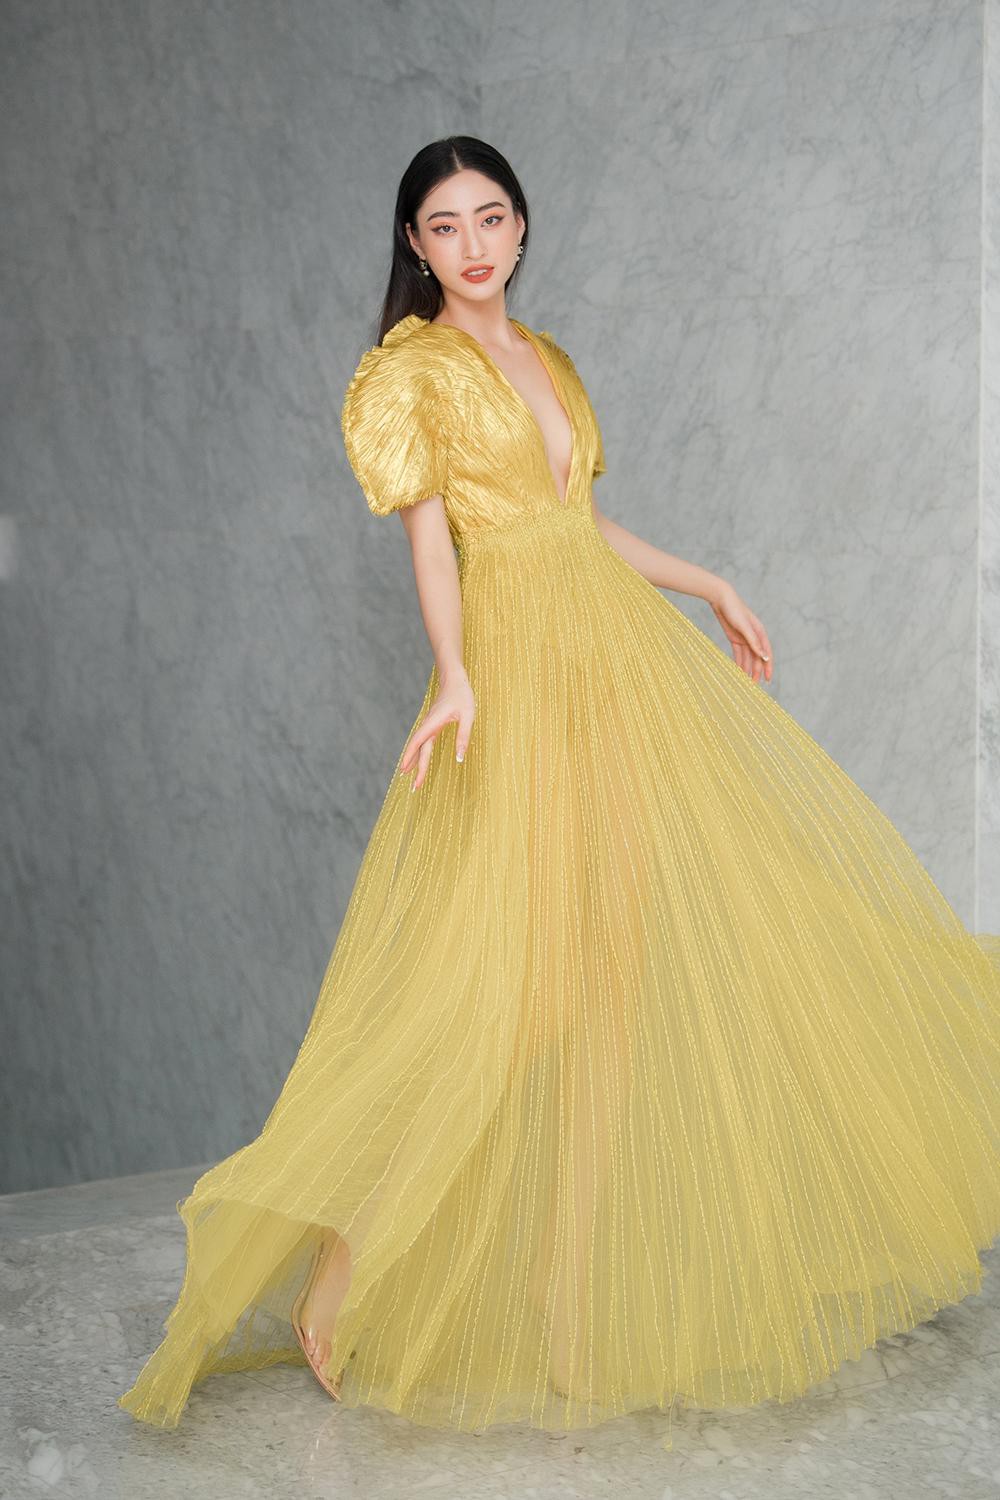 Hoa hậu Đỗ Thị Hà và Lương Thùy Linh nóng bỏng trong trang phục gam màu rực rỡ của nhà thiết kế Công Trí - Ảnh 8.